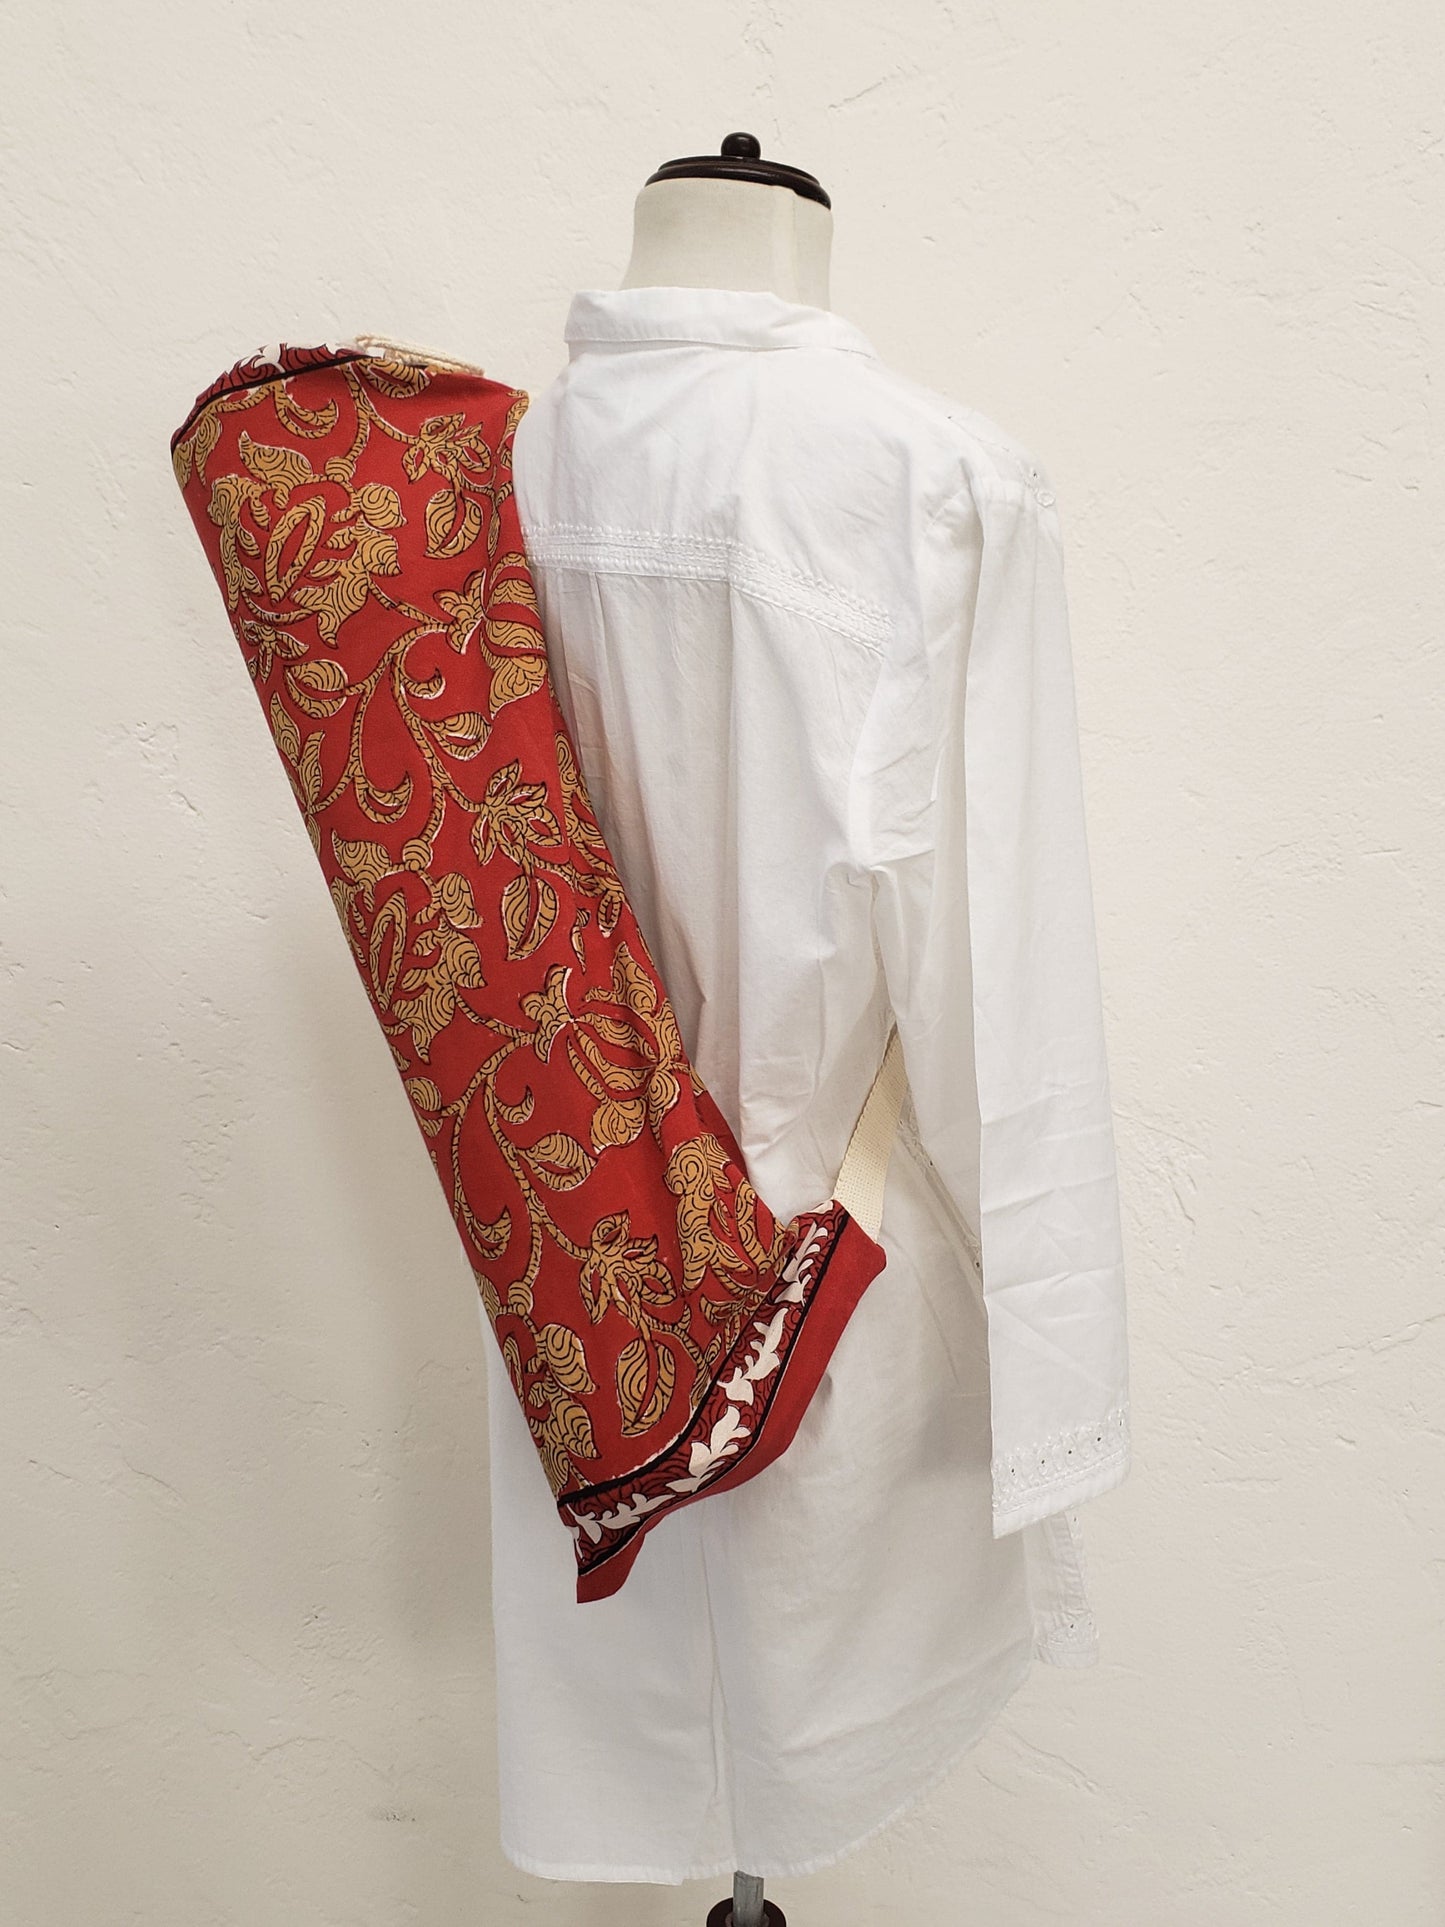 Funda para tapete de yoga 100% algodón, color rojo quemado estampada a mano con flores beige con correa en color beige.